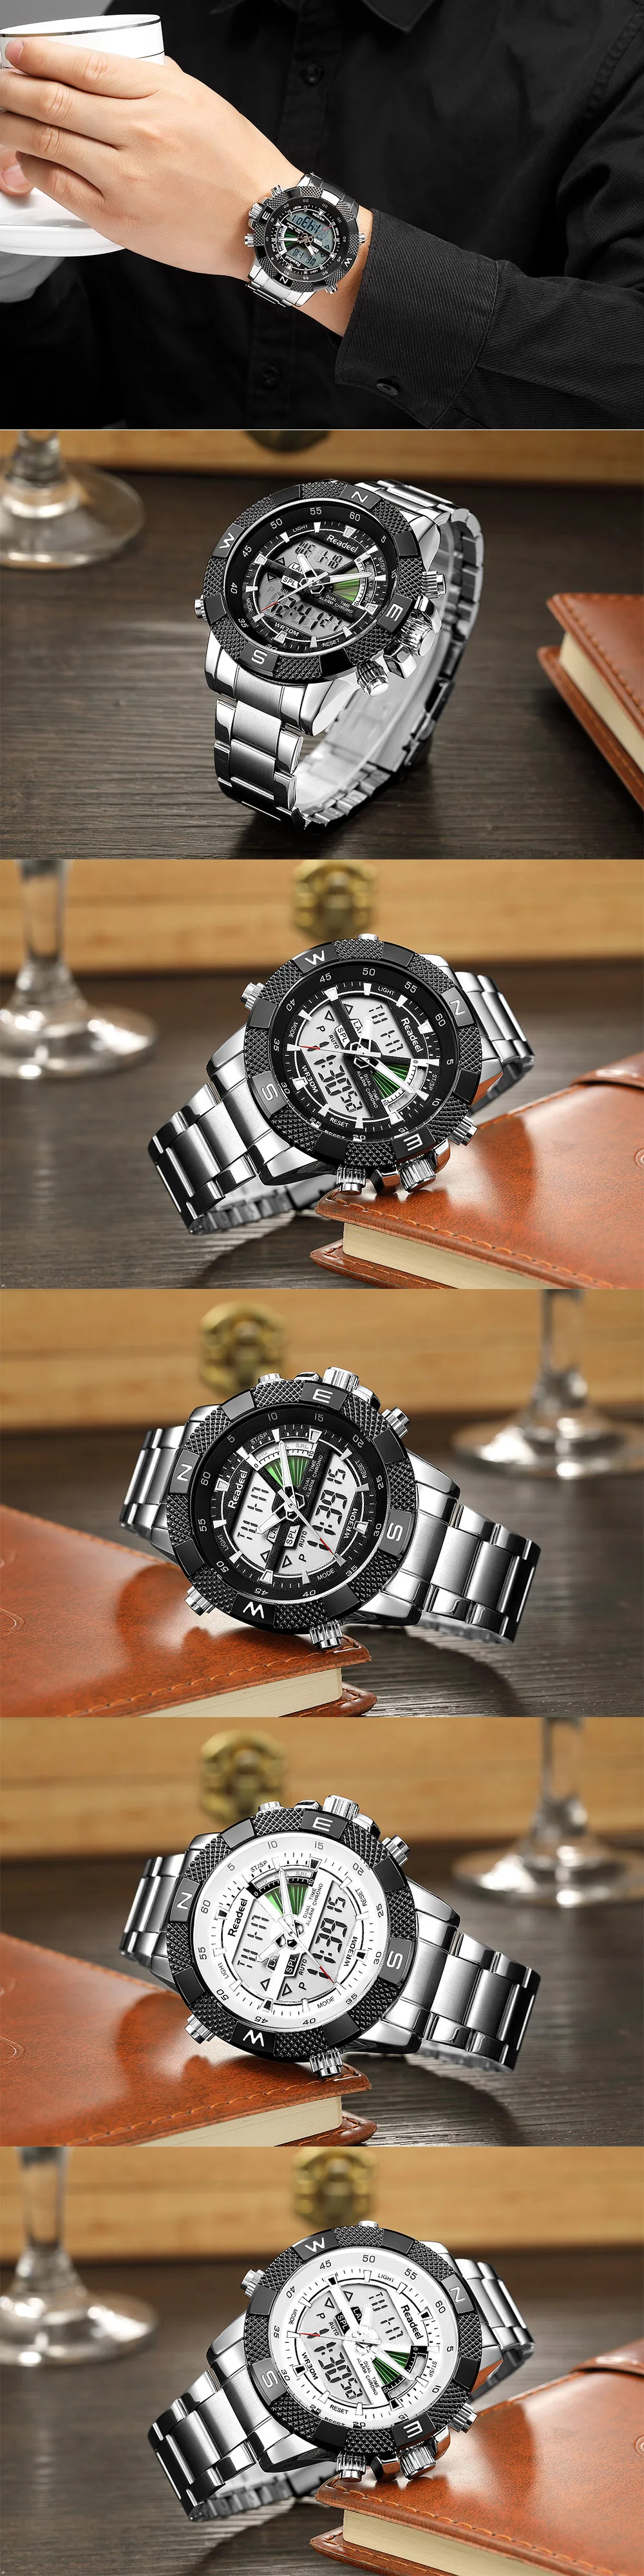 Relogio Masculino, светодиодные мужские часы, Лидирующий бренд, Роскошные Кварцевые часы, мужские повседневные полностью стальные мужские военные водонепроницаемые спортивные наручные часы